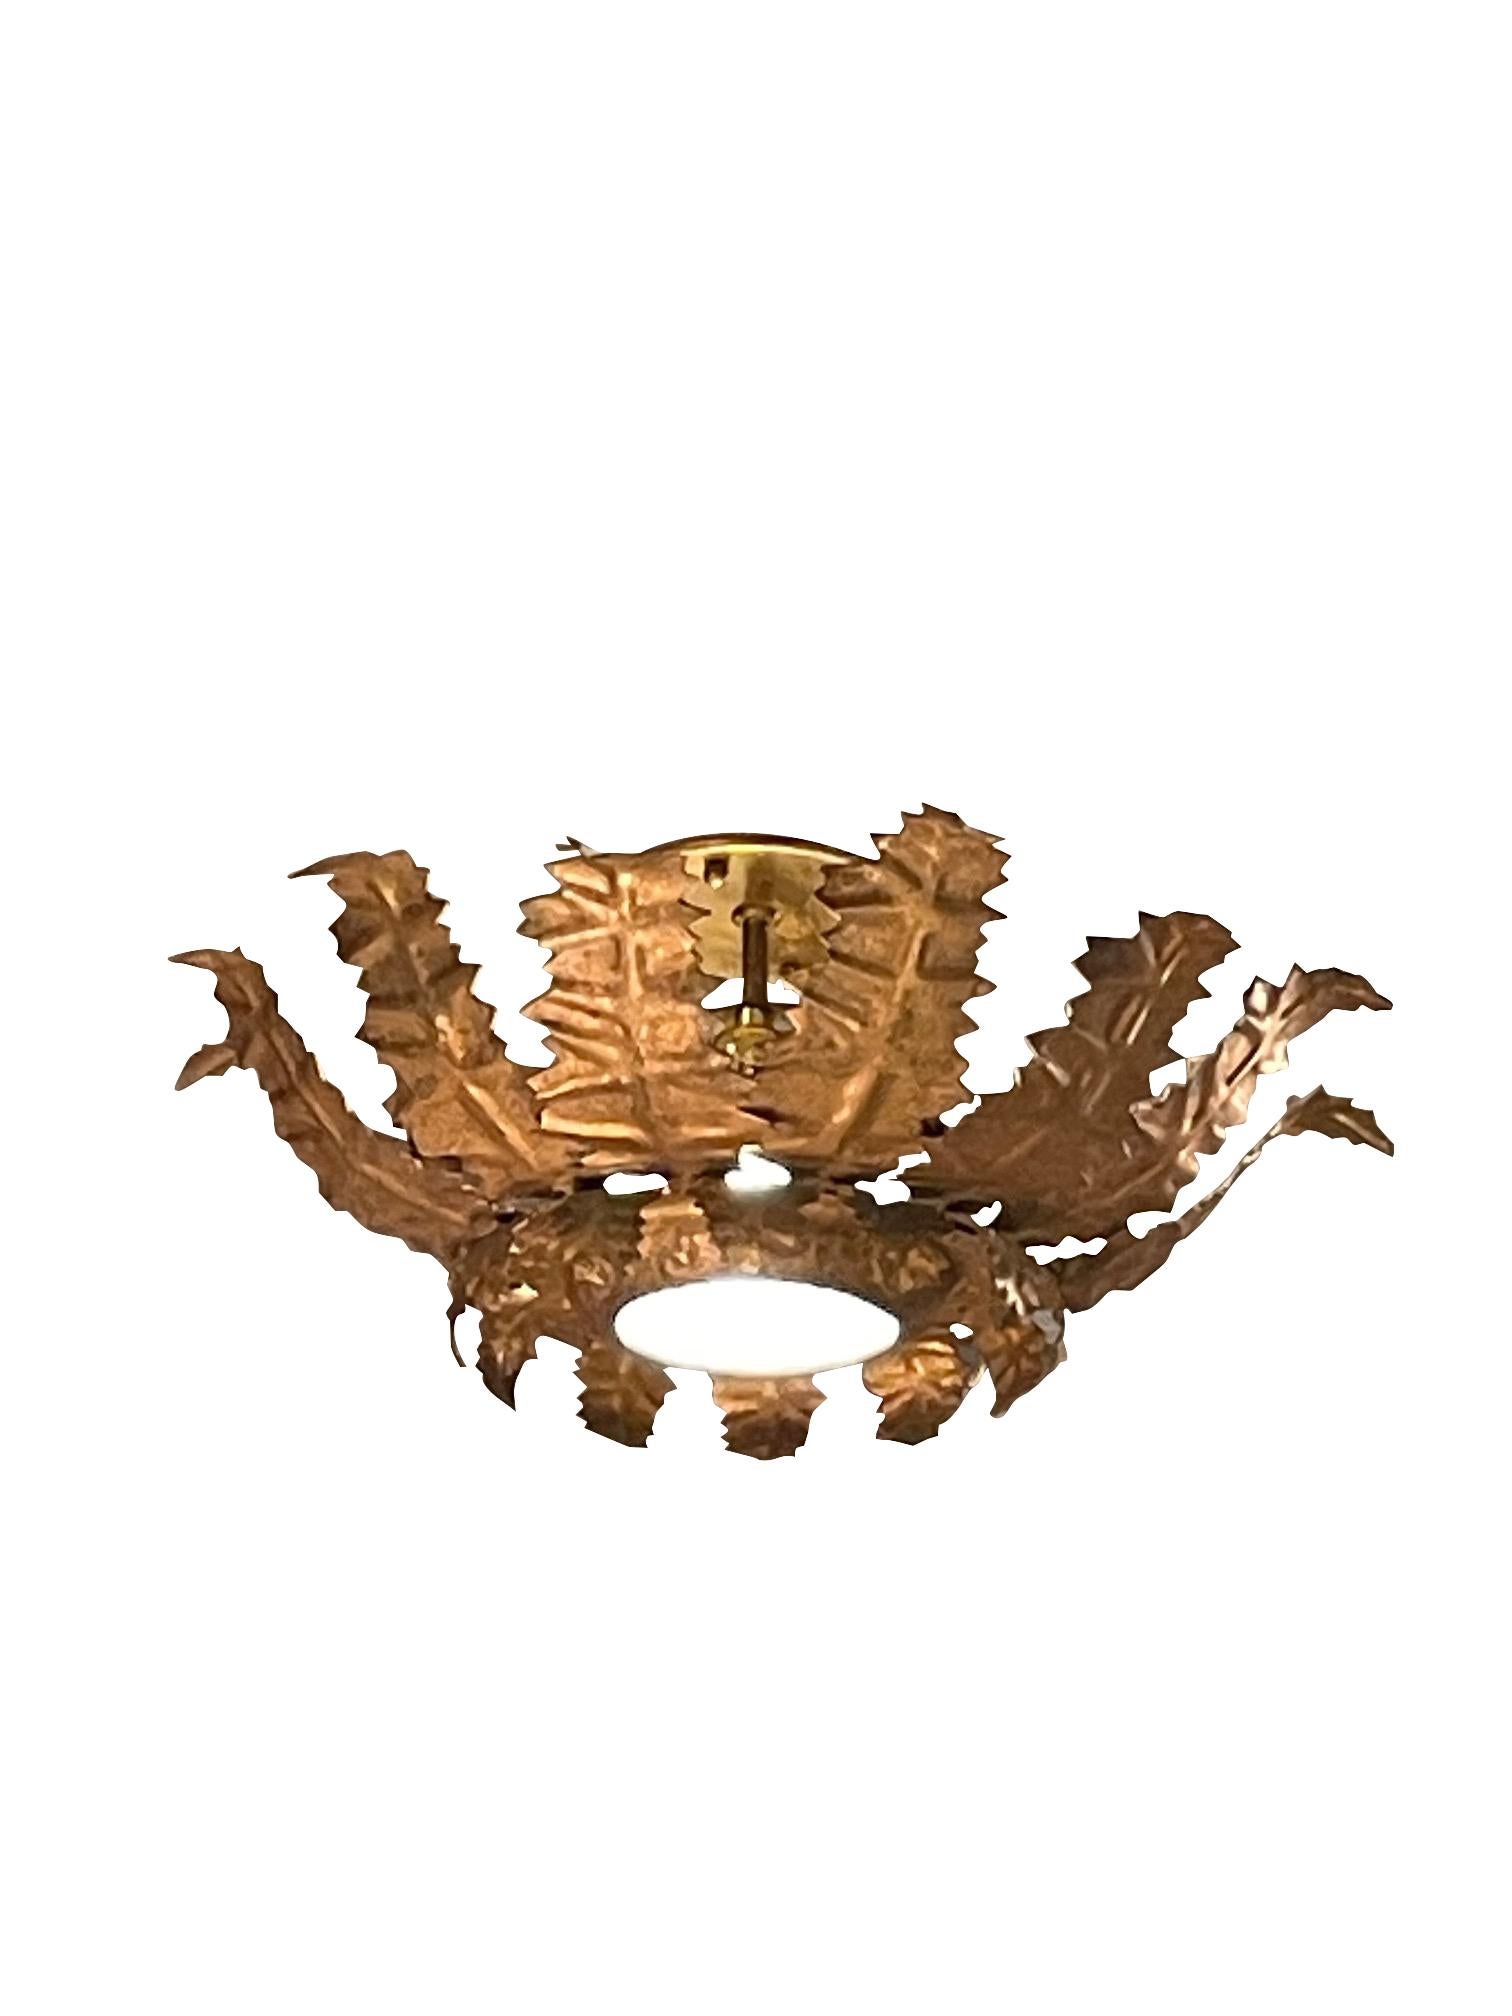 1940's Spanish gold gold metal sunburst design ceiling mount chandelier.
Mittelstück aus Glas.
Neu verkabelt und UL-gelistet.
Einzelne Kandelaber-Glühbirne.
Zwei davon sind erhältlich und werden einzeln verkauft.